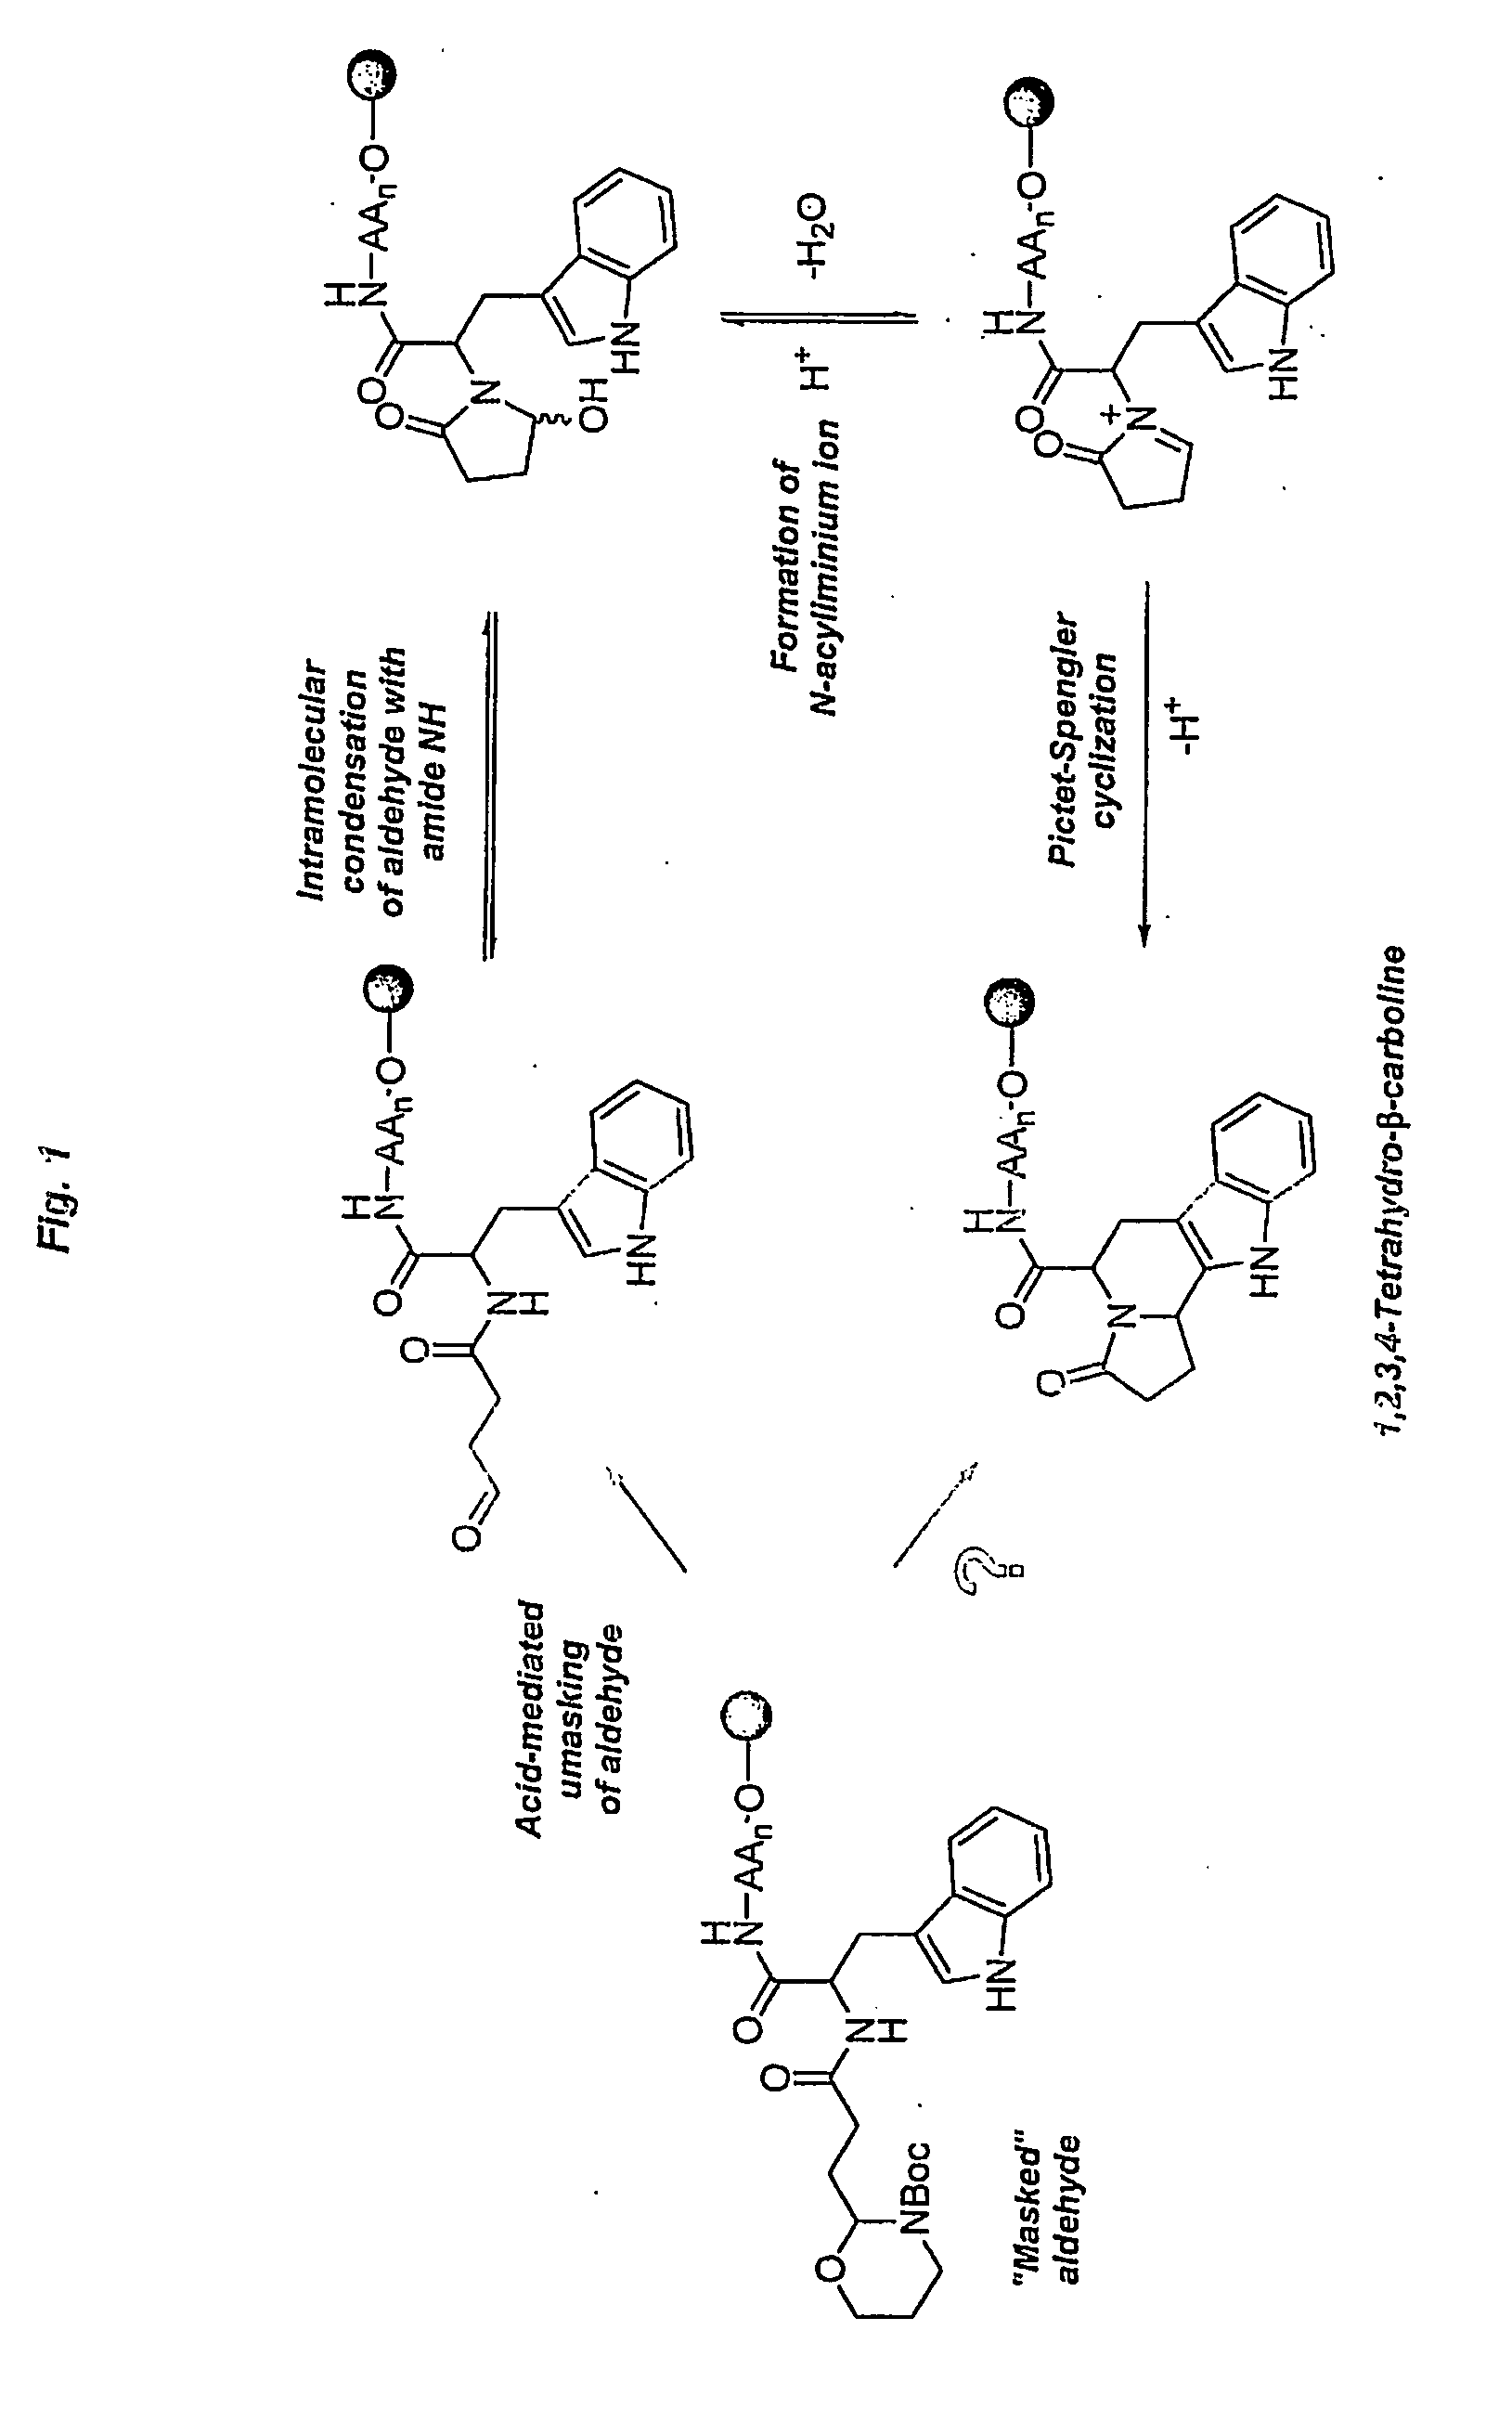 Heterocyclic organic molecules through intramolecular formation of n-acyliminium ions